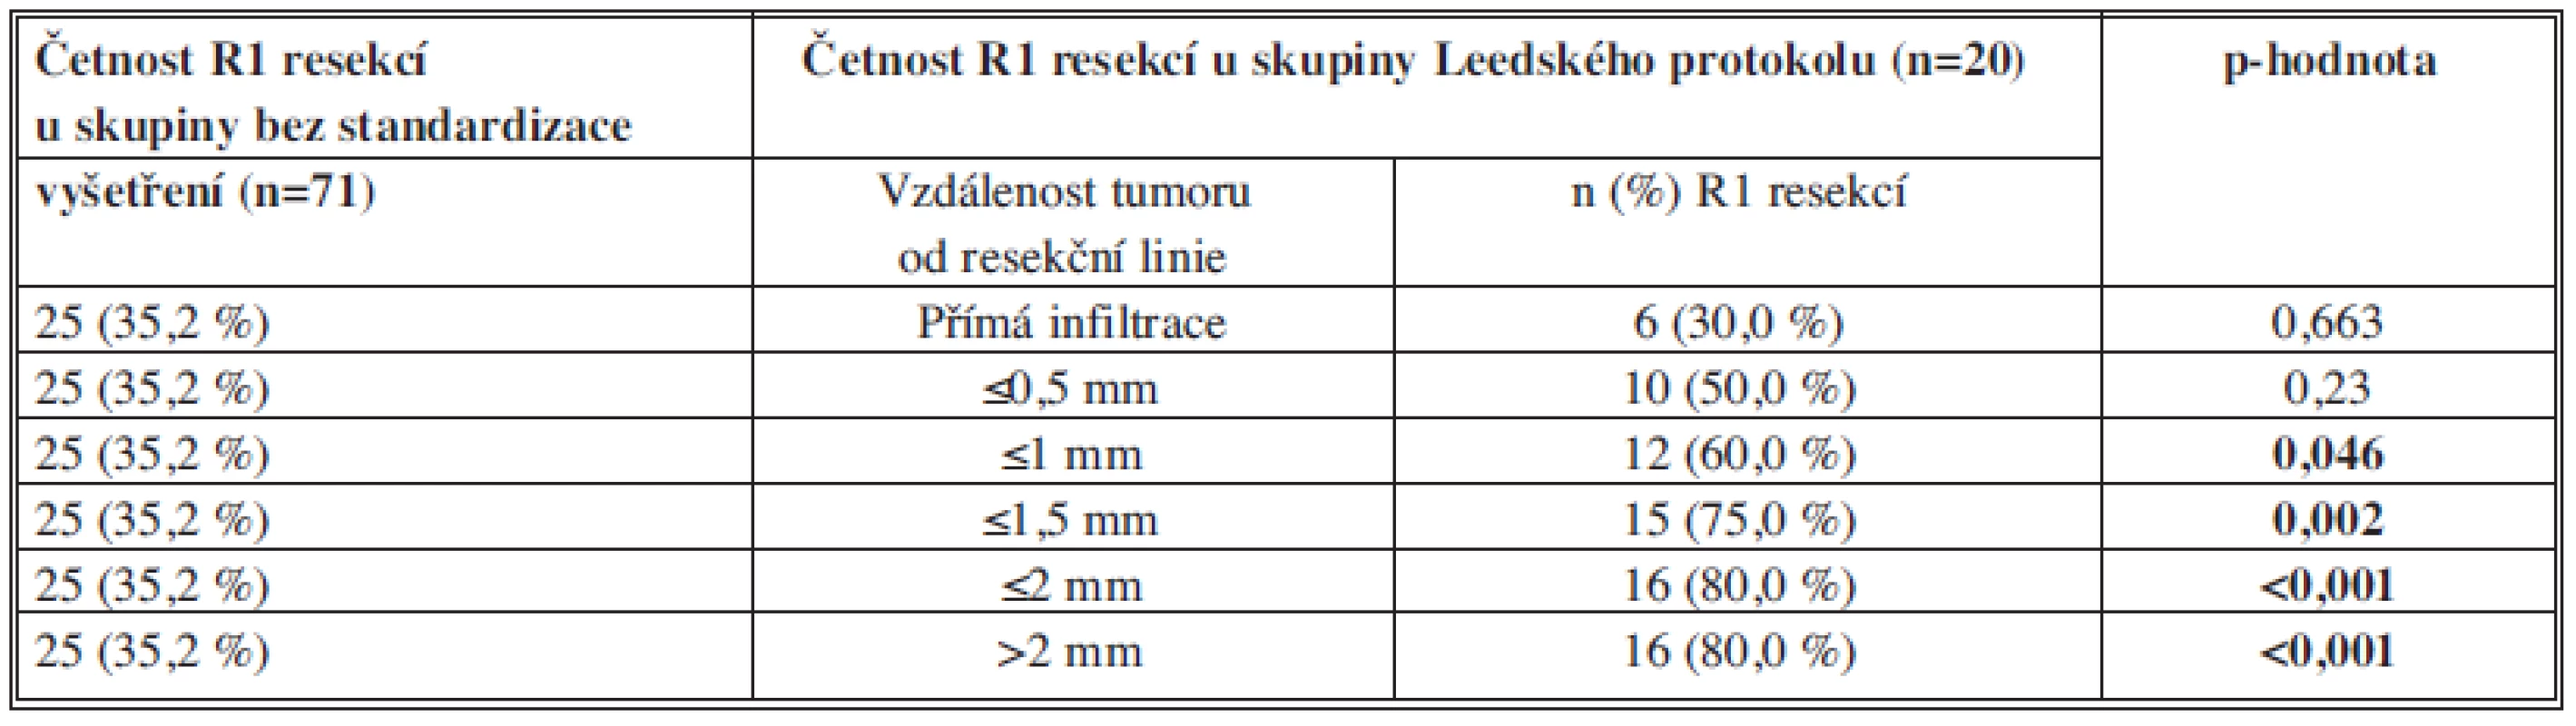 Korelace mezi parametrem „vzdálenost tumoru od okraje linie“ a četností R1 resekcí u souboru resekátů vyšetřených
Leedským protokolem (n=20)
Tab. 2: Tumour - resection line distance and R1 resection rate correlation in the group of pancreatic cancer specimens examined by the Leeds protocol